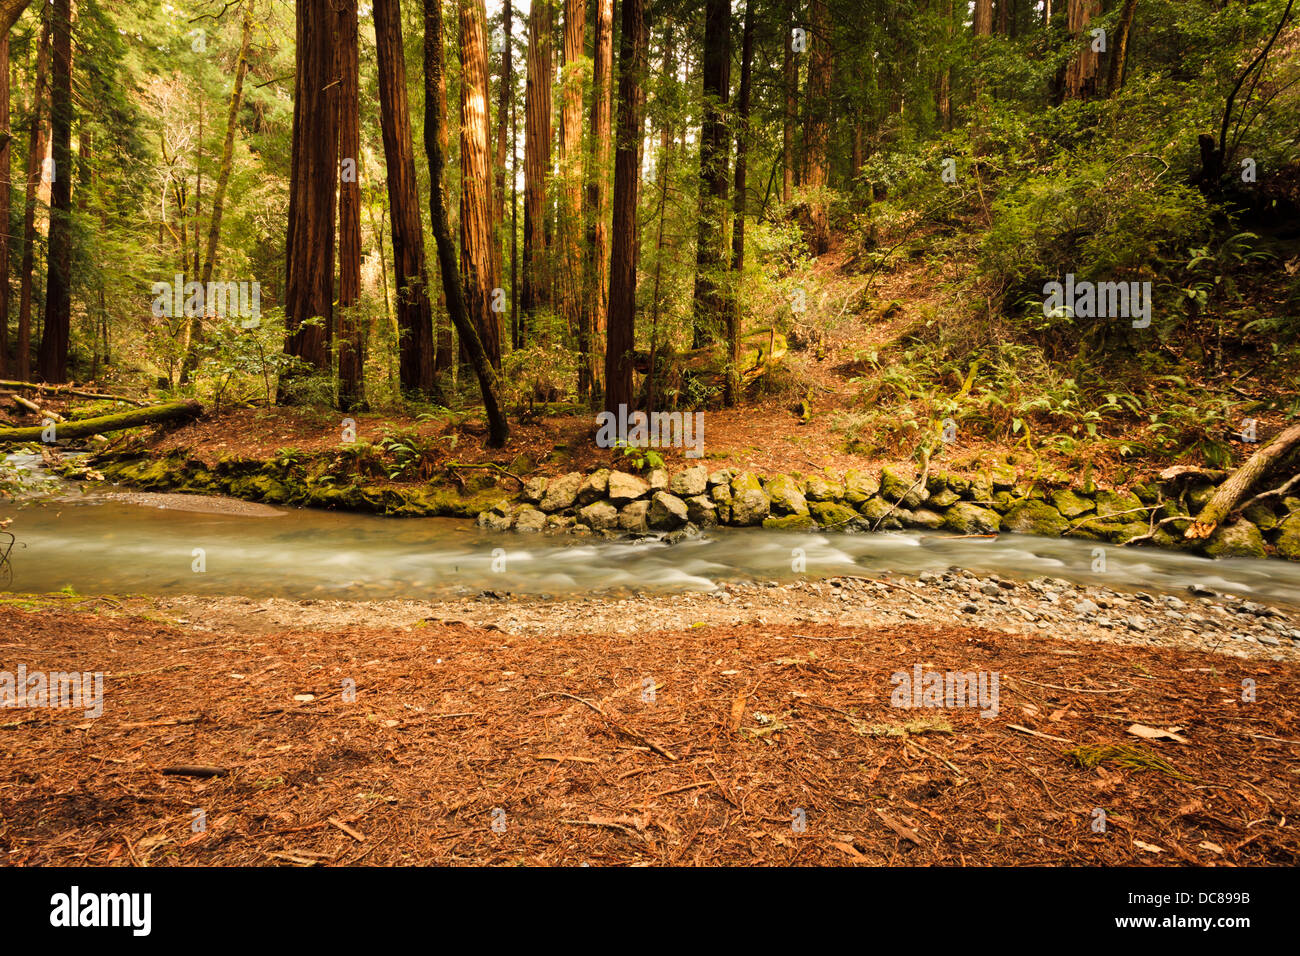 Que fluye suavemente Redwood Creek cruza delante de los árboles redwood sequoia costera en un entorno forestal tonos por sunshine Foto de stock